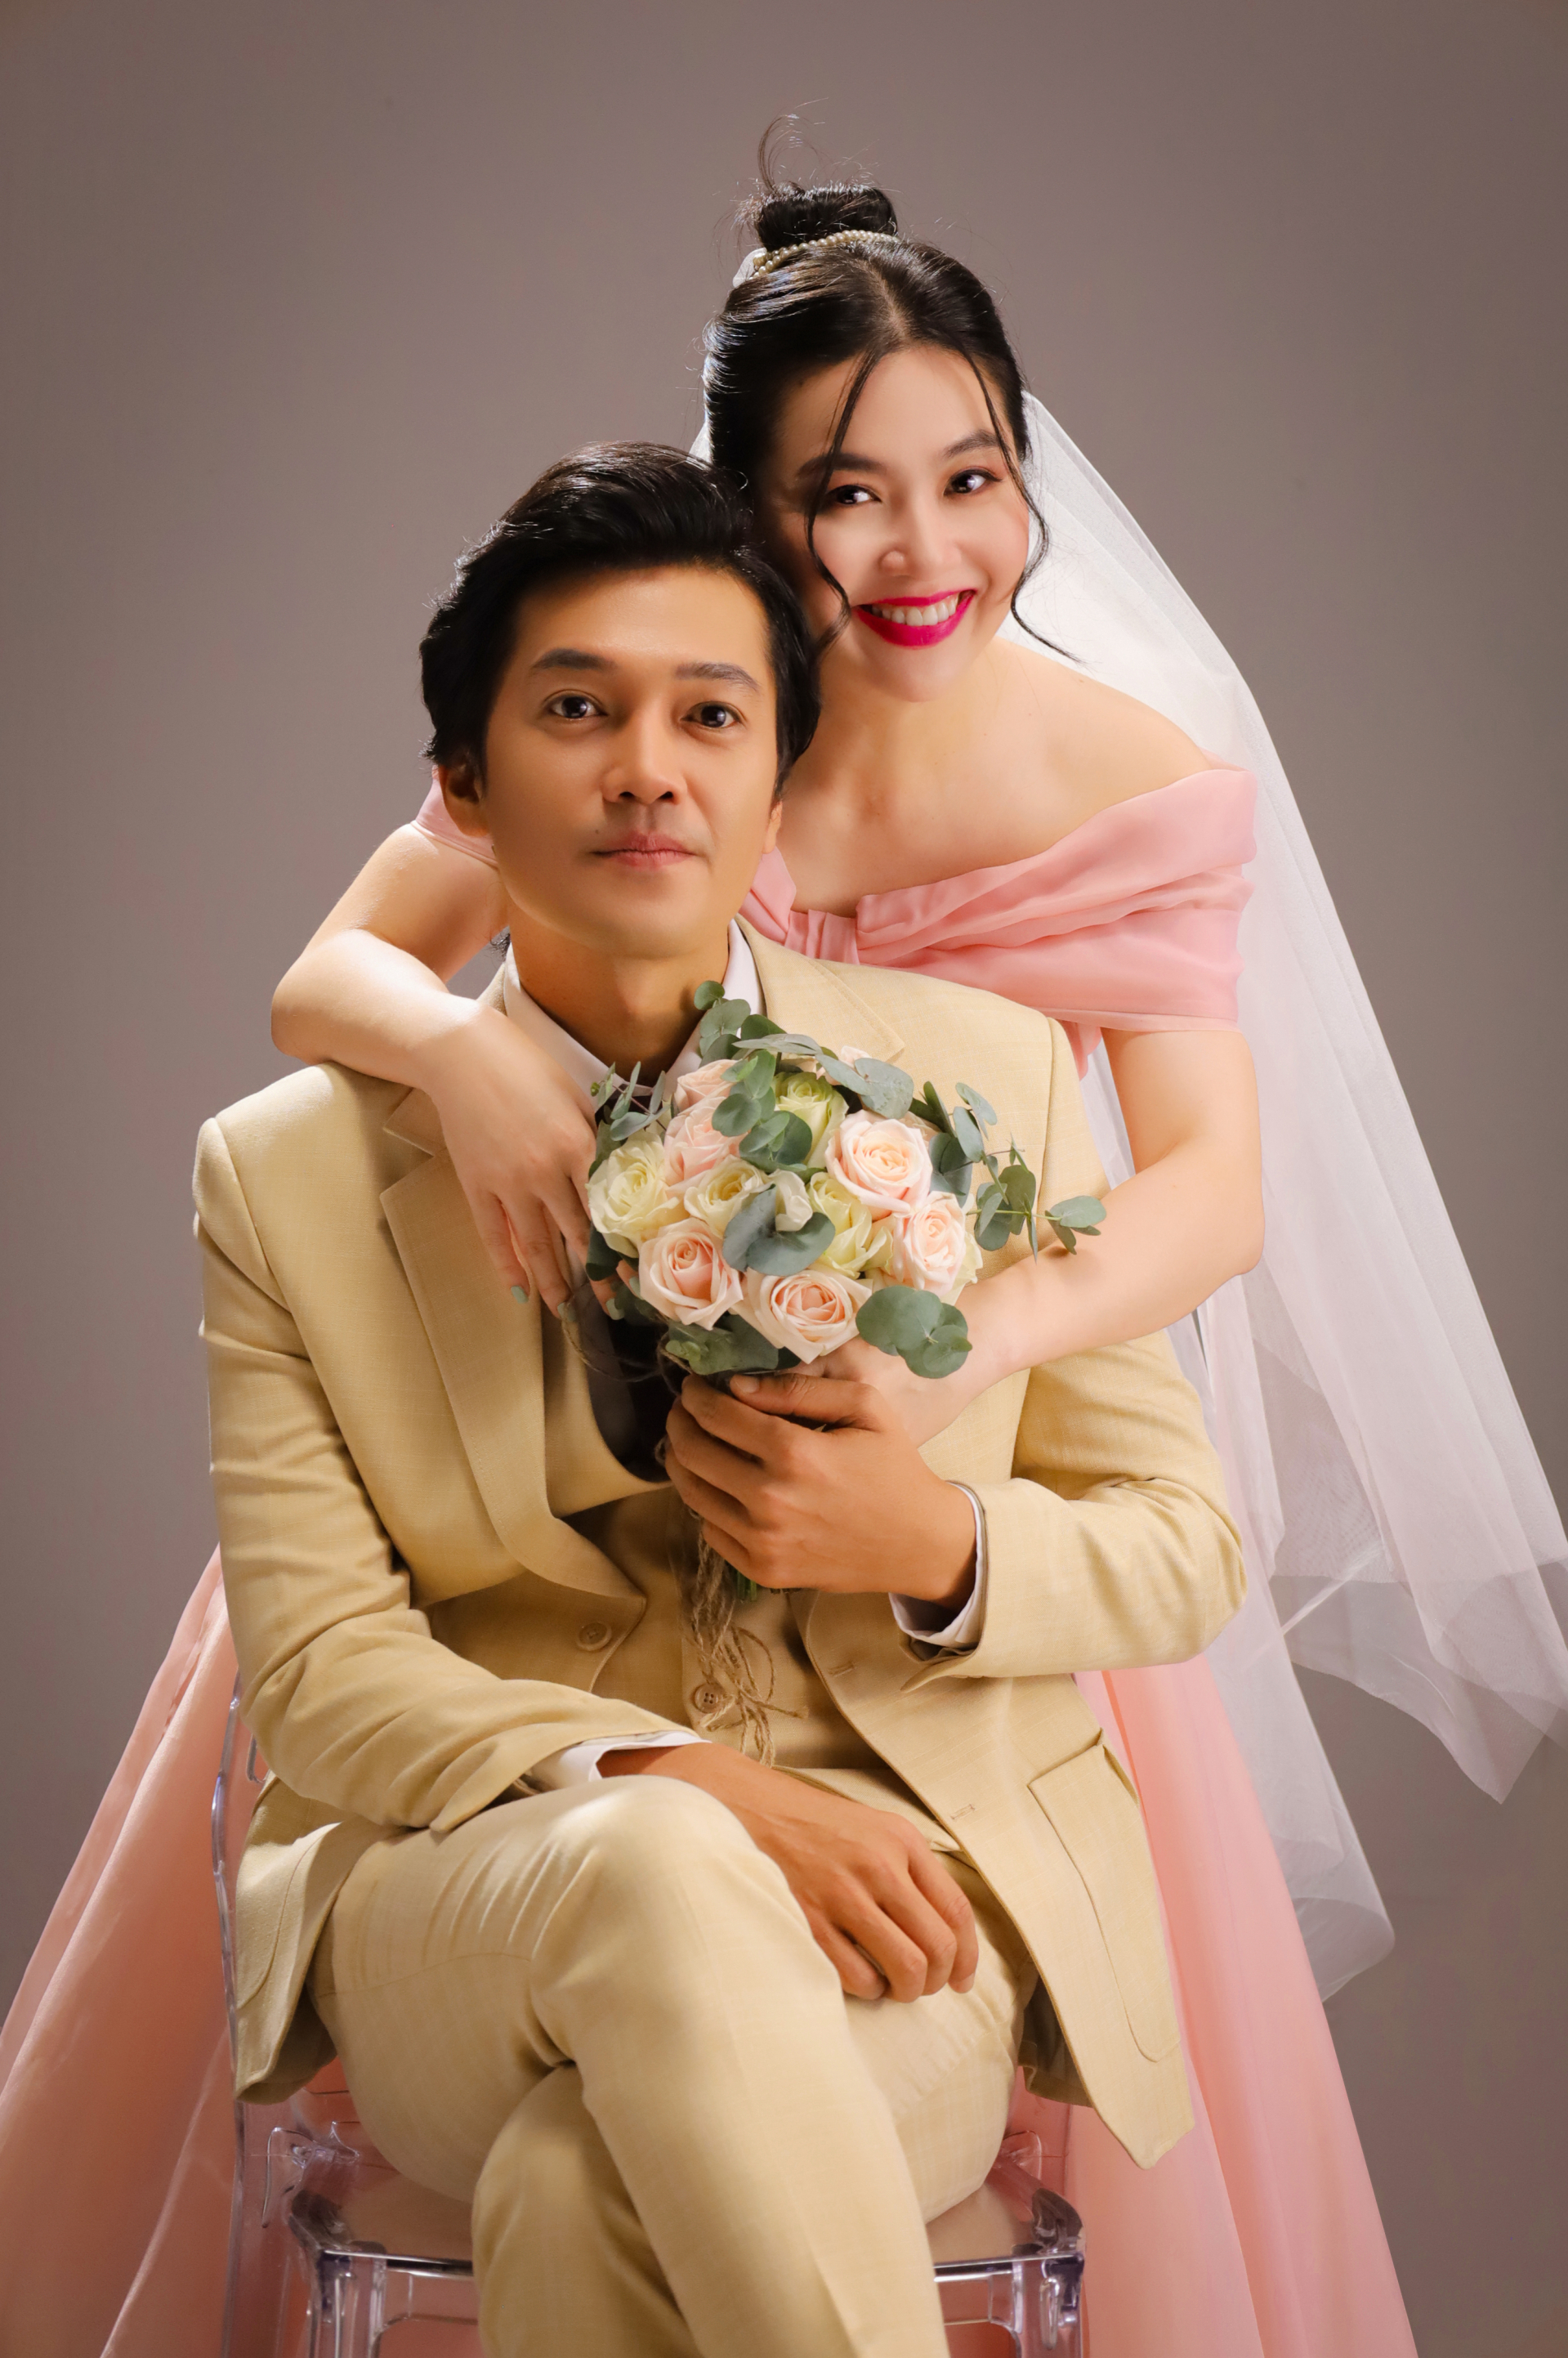 Làm vợ chồng trong phim mới, nhưng Lê Khánh và Quang Tuấn đồng loạt chia sẻ xúc động về gia đình nhỏ ngoài đời - ảnh 1